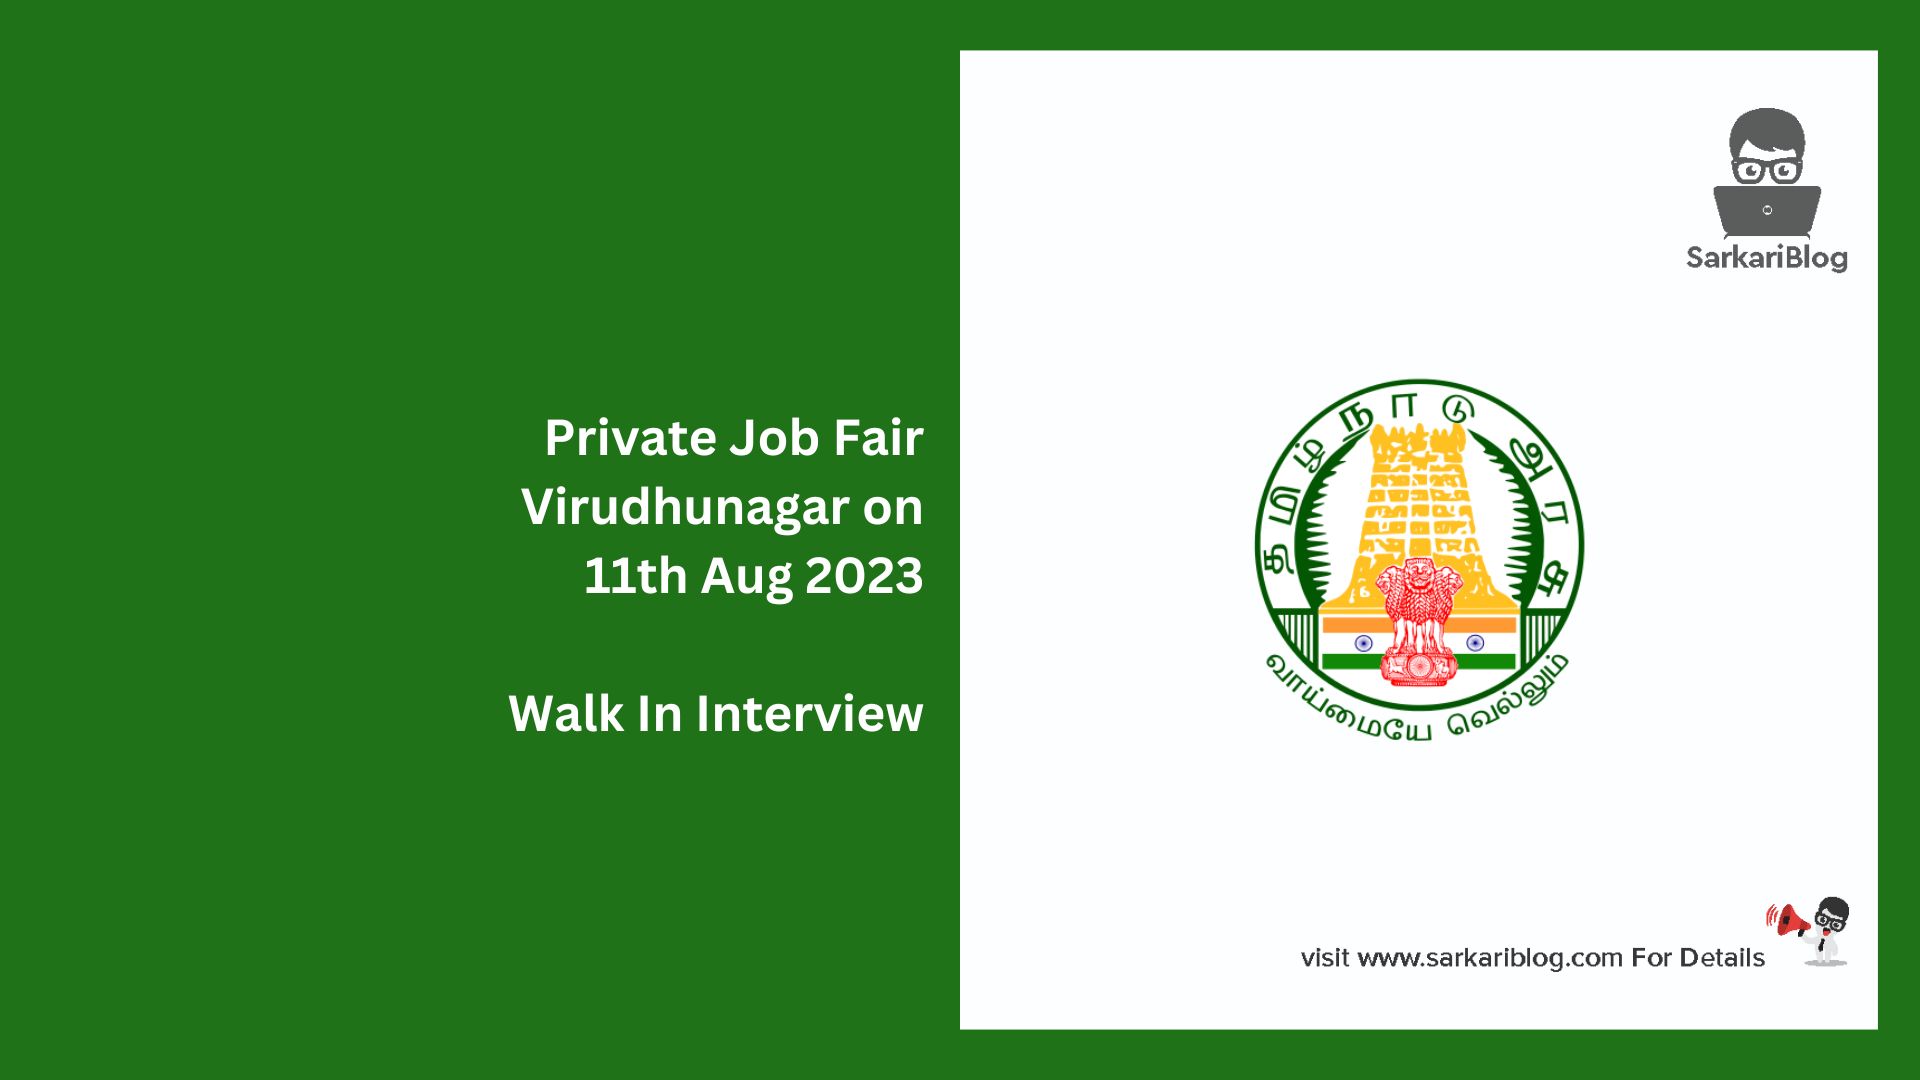 Private Job Fair Virudhunagar on 11th Aug 2023